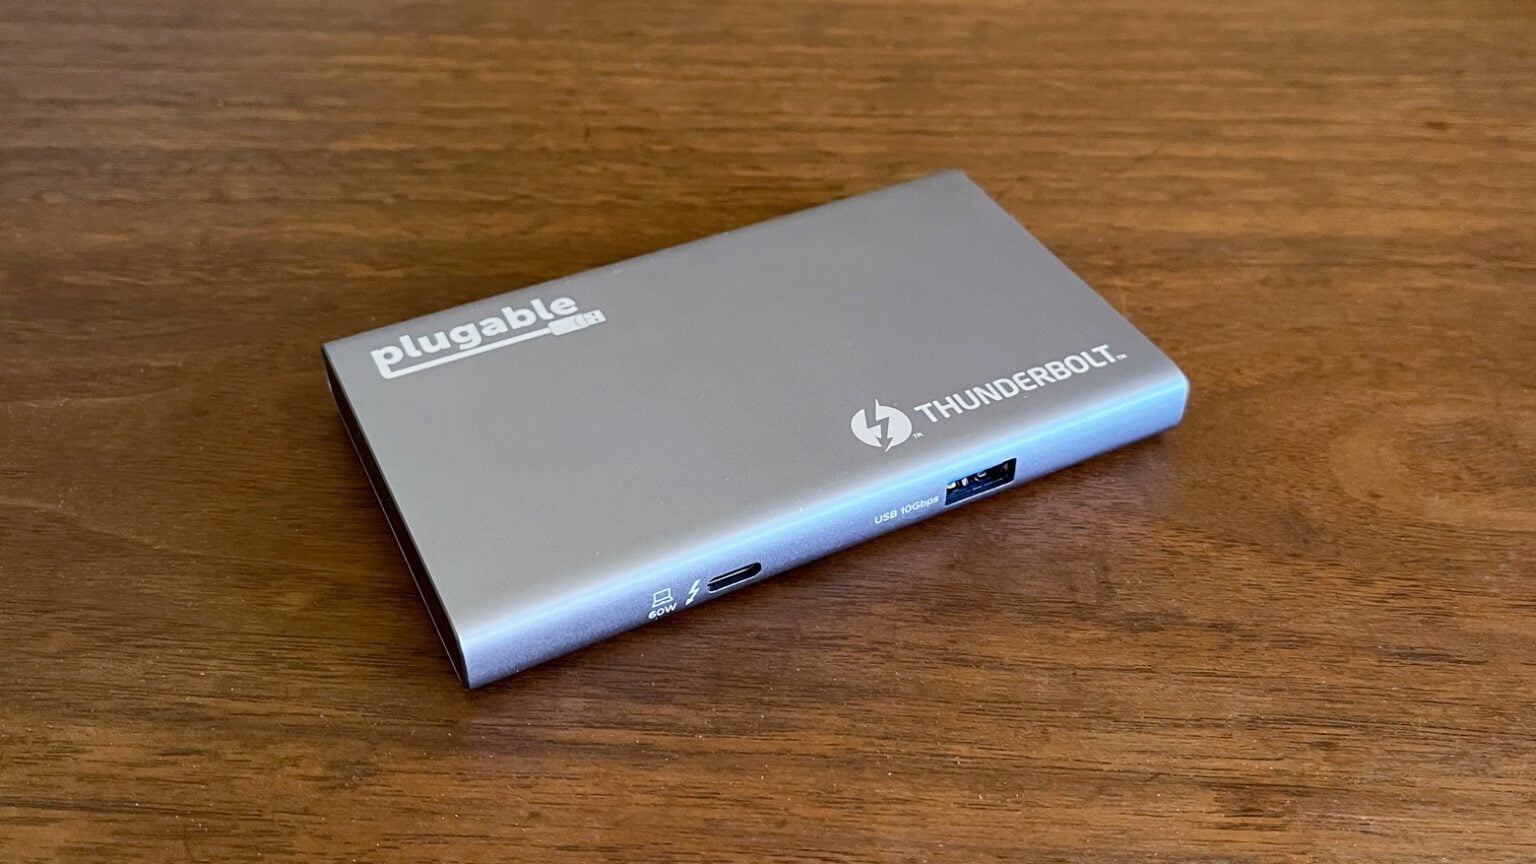 Plugable USB4-HUB3A Thunderbolt hub review